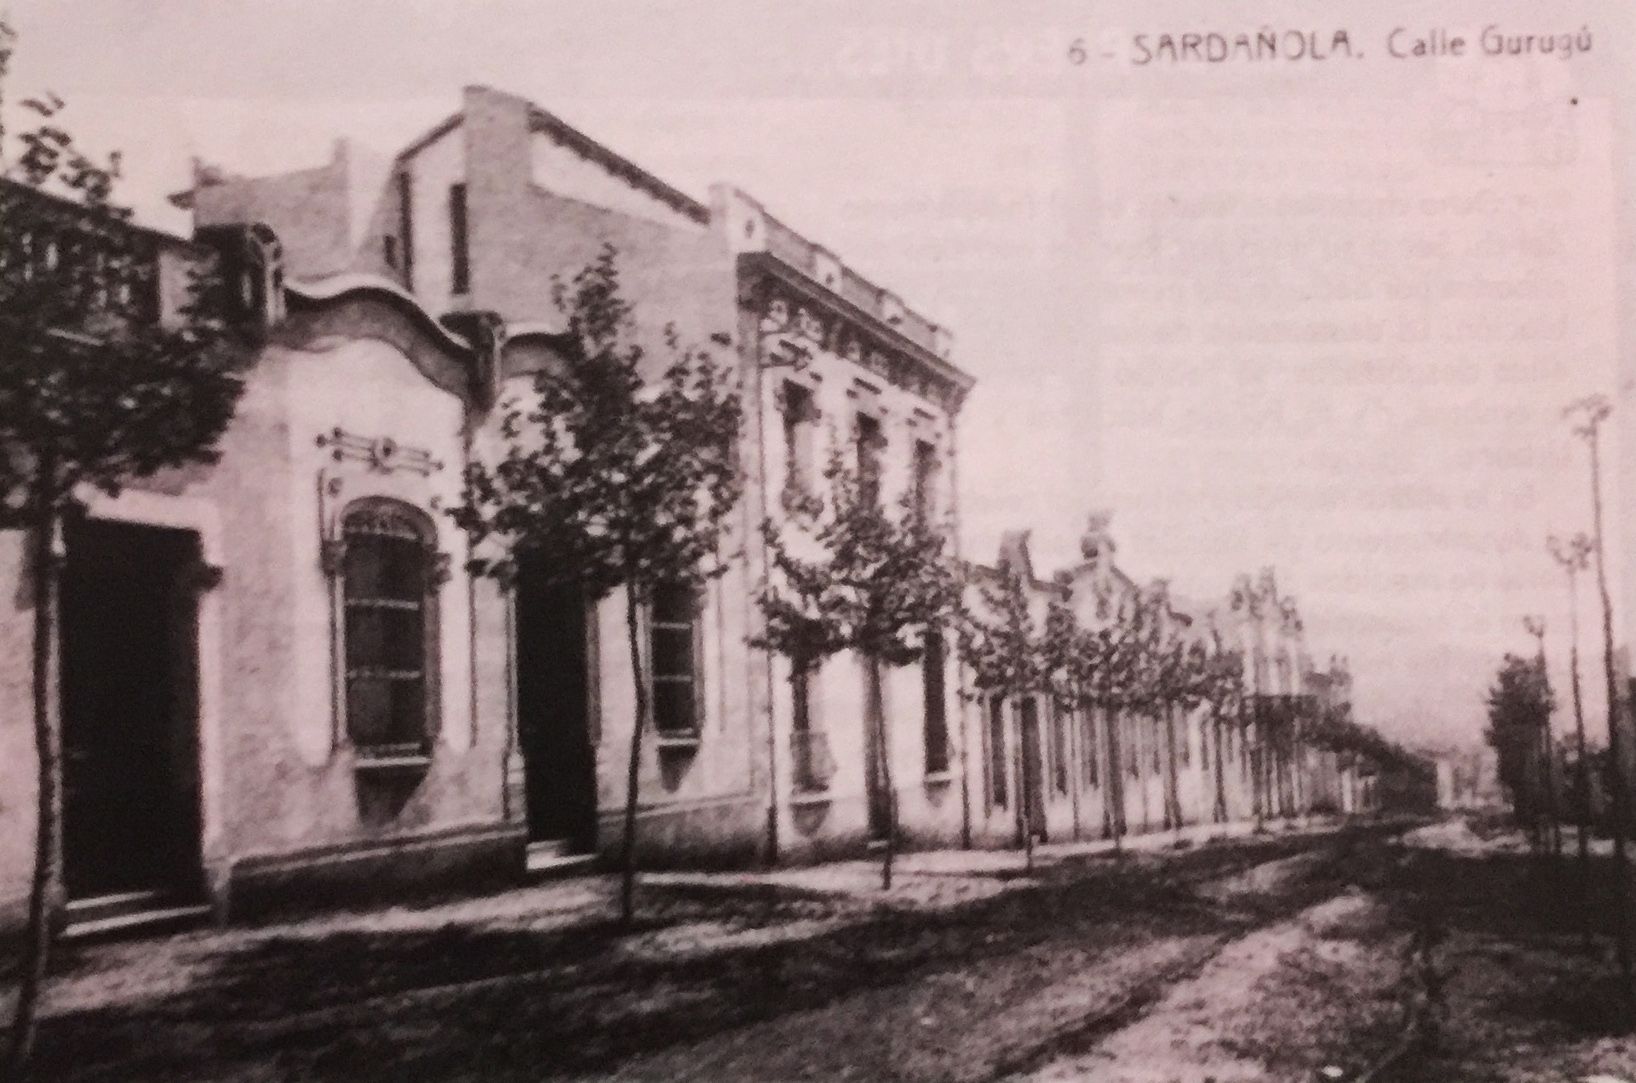 Antic carrer Gurugú, actual carrer de Prat de la Riba.